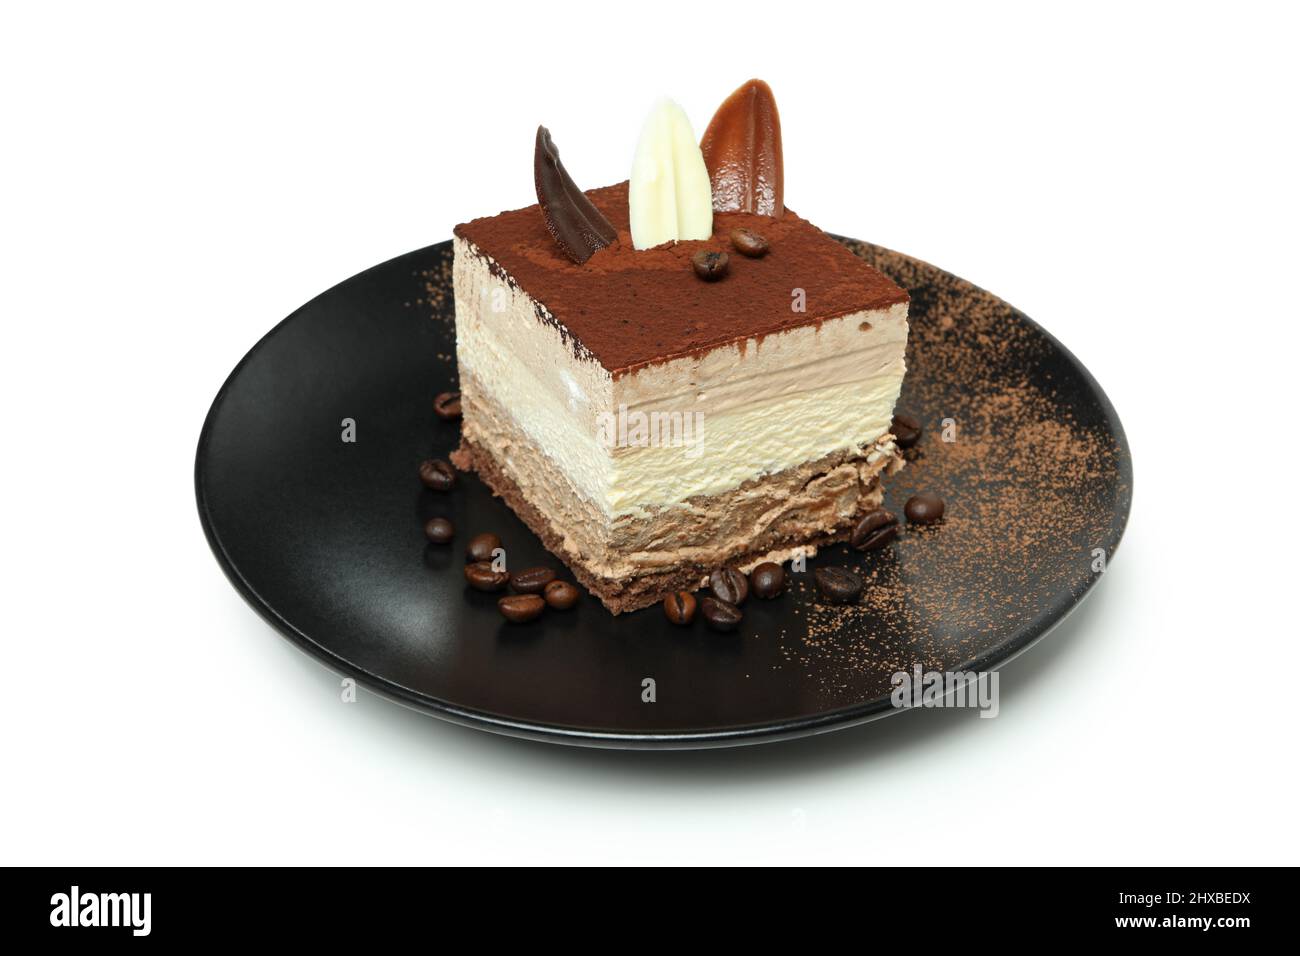 Plate with Tiramisu cake isolated on white background Stock Photo